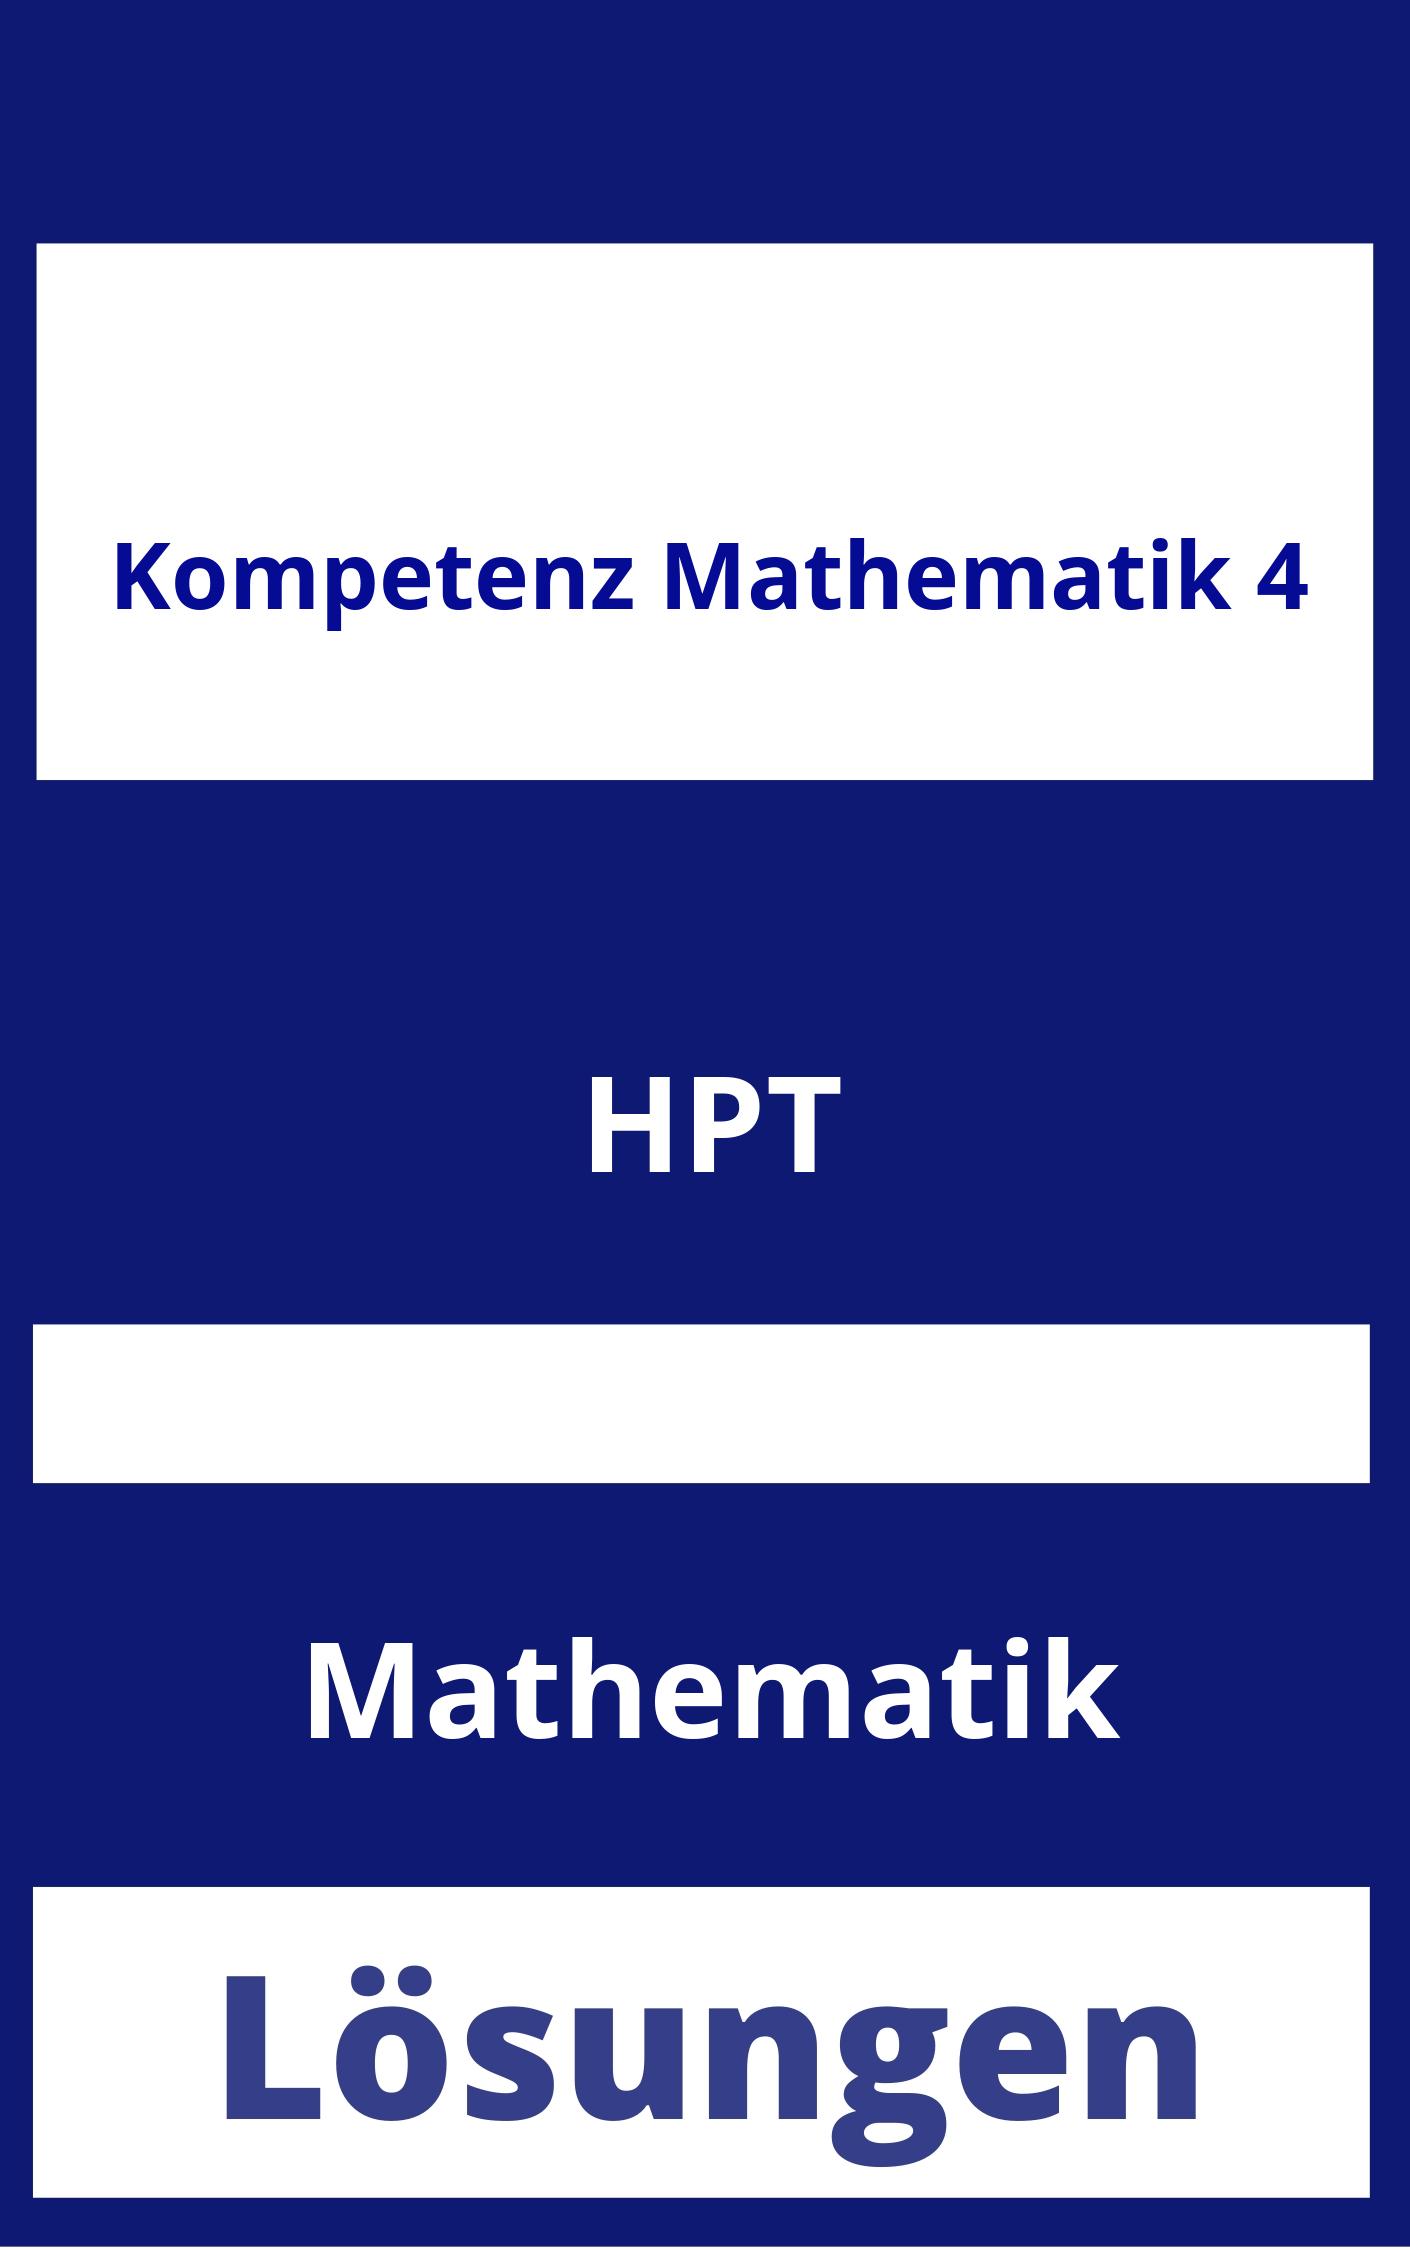 Kompetenz Mathematik 4 Lösungen PDF